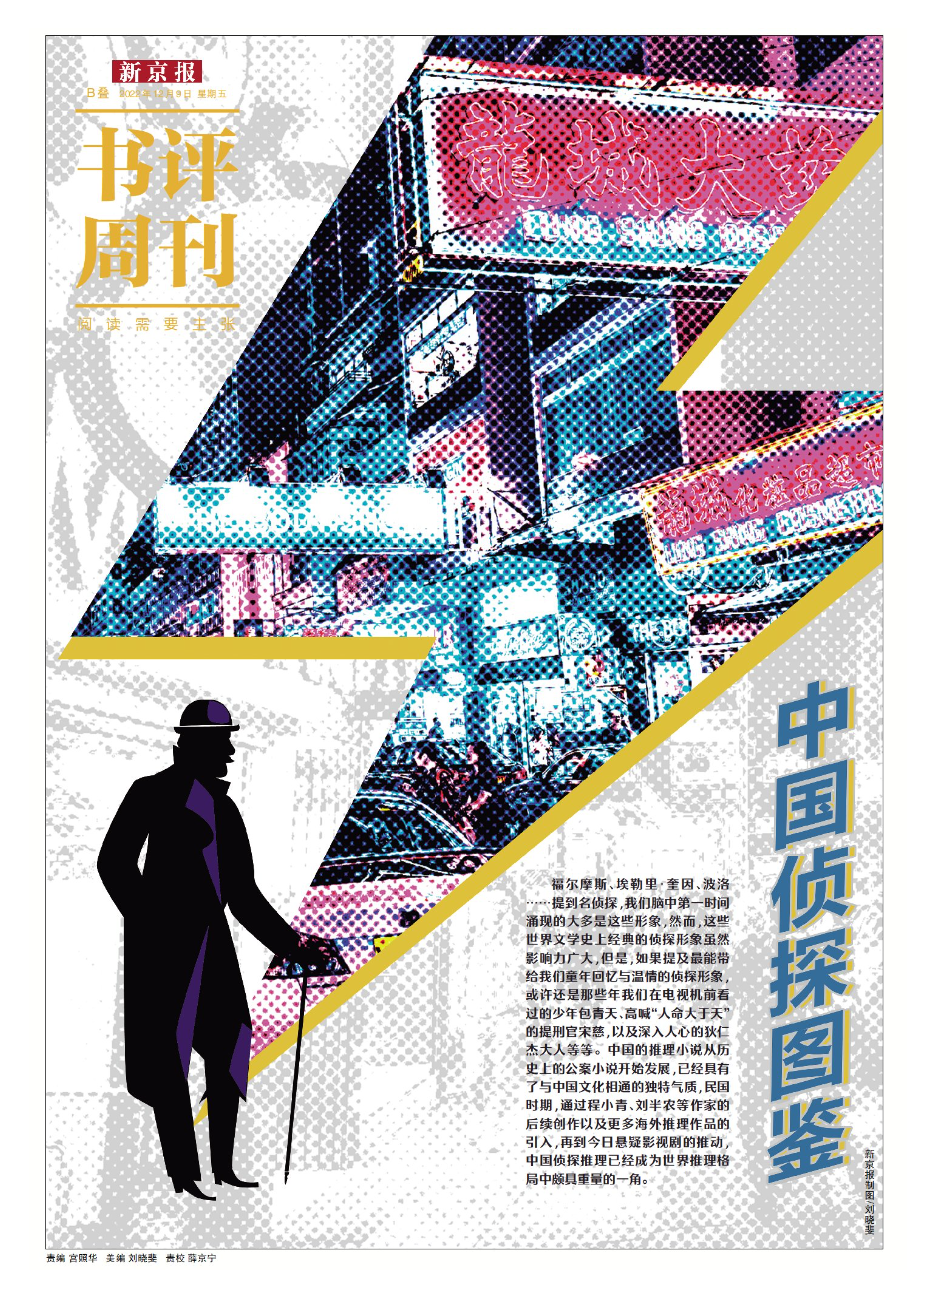 本文出自《新京报·书评周刊》12月9日专题《中国侦探图鉴》的B02-03版。